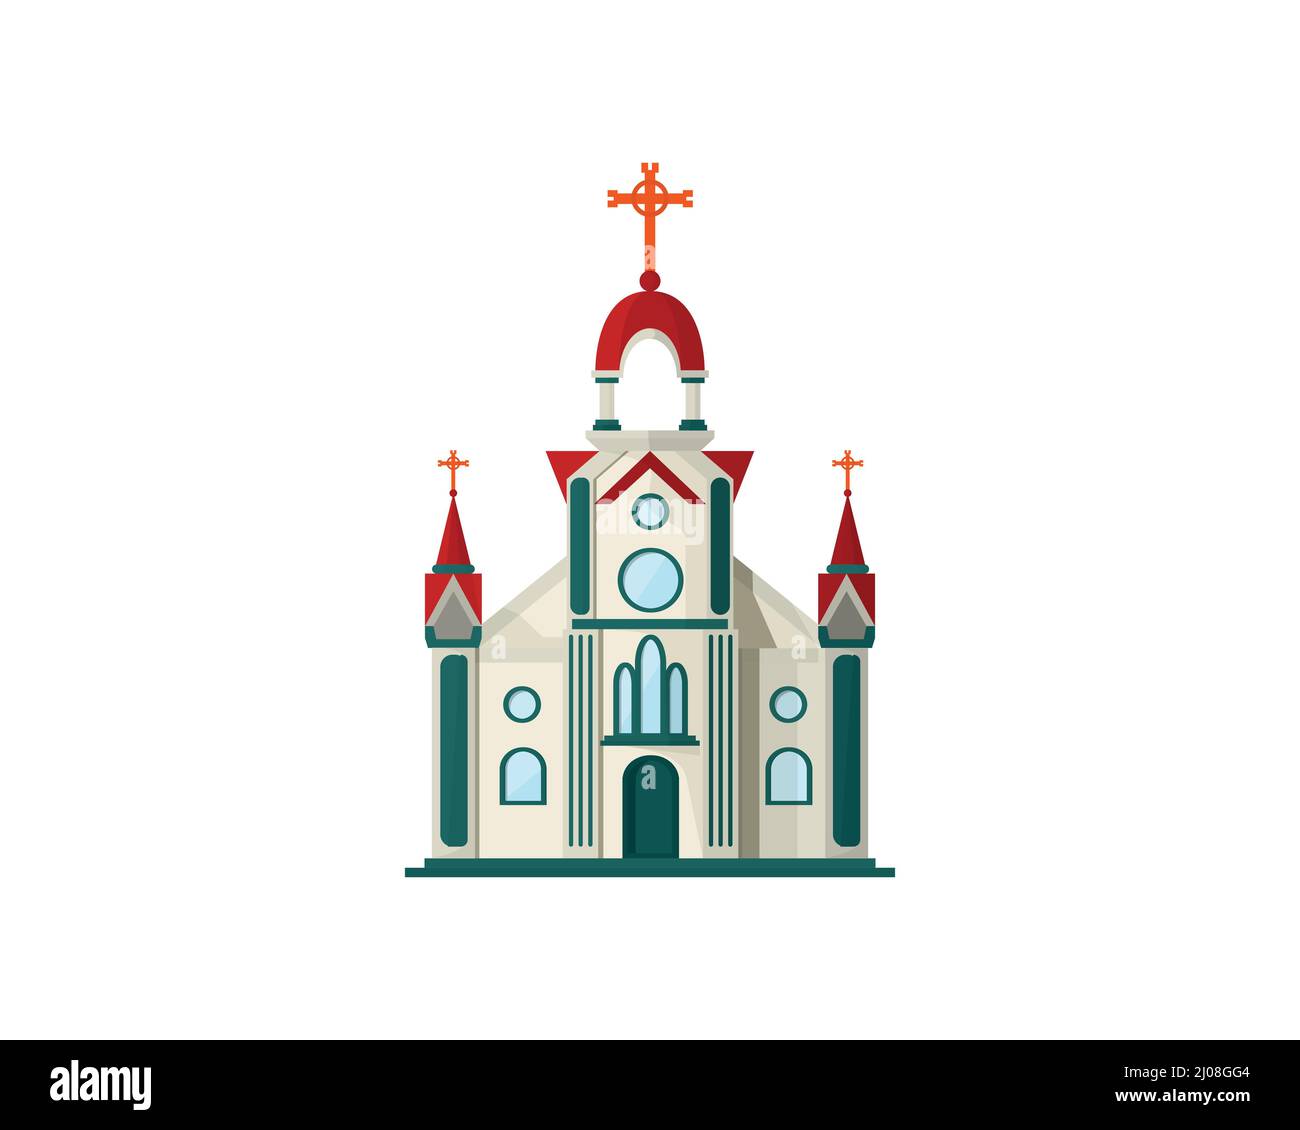 Christliche Kirche mit alter Architektur Illustration Stock Vektor